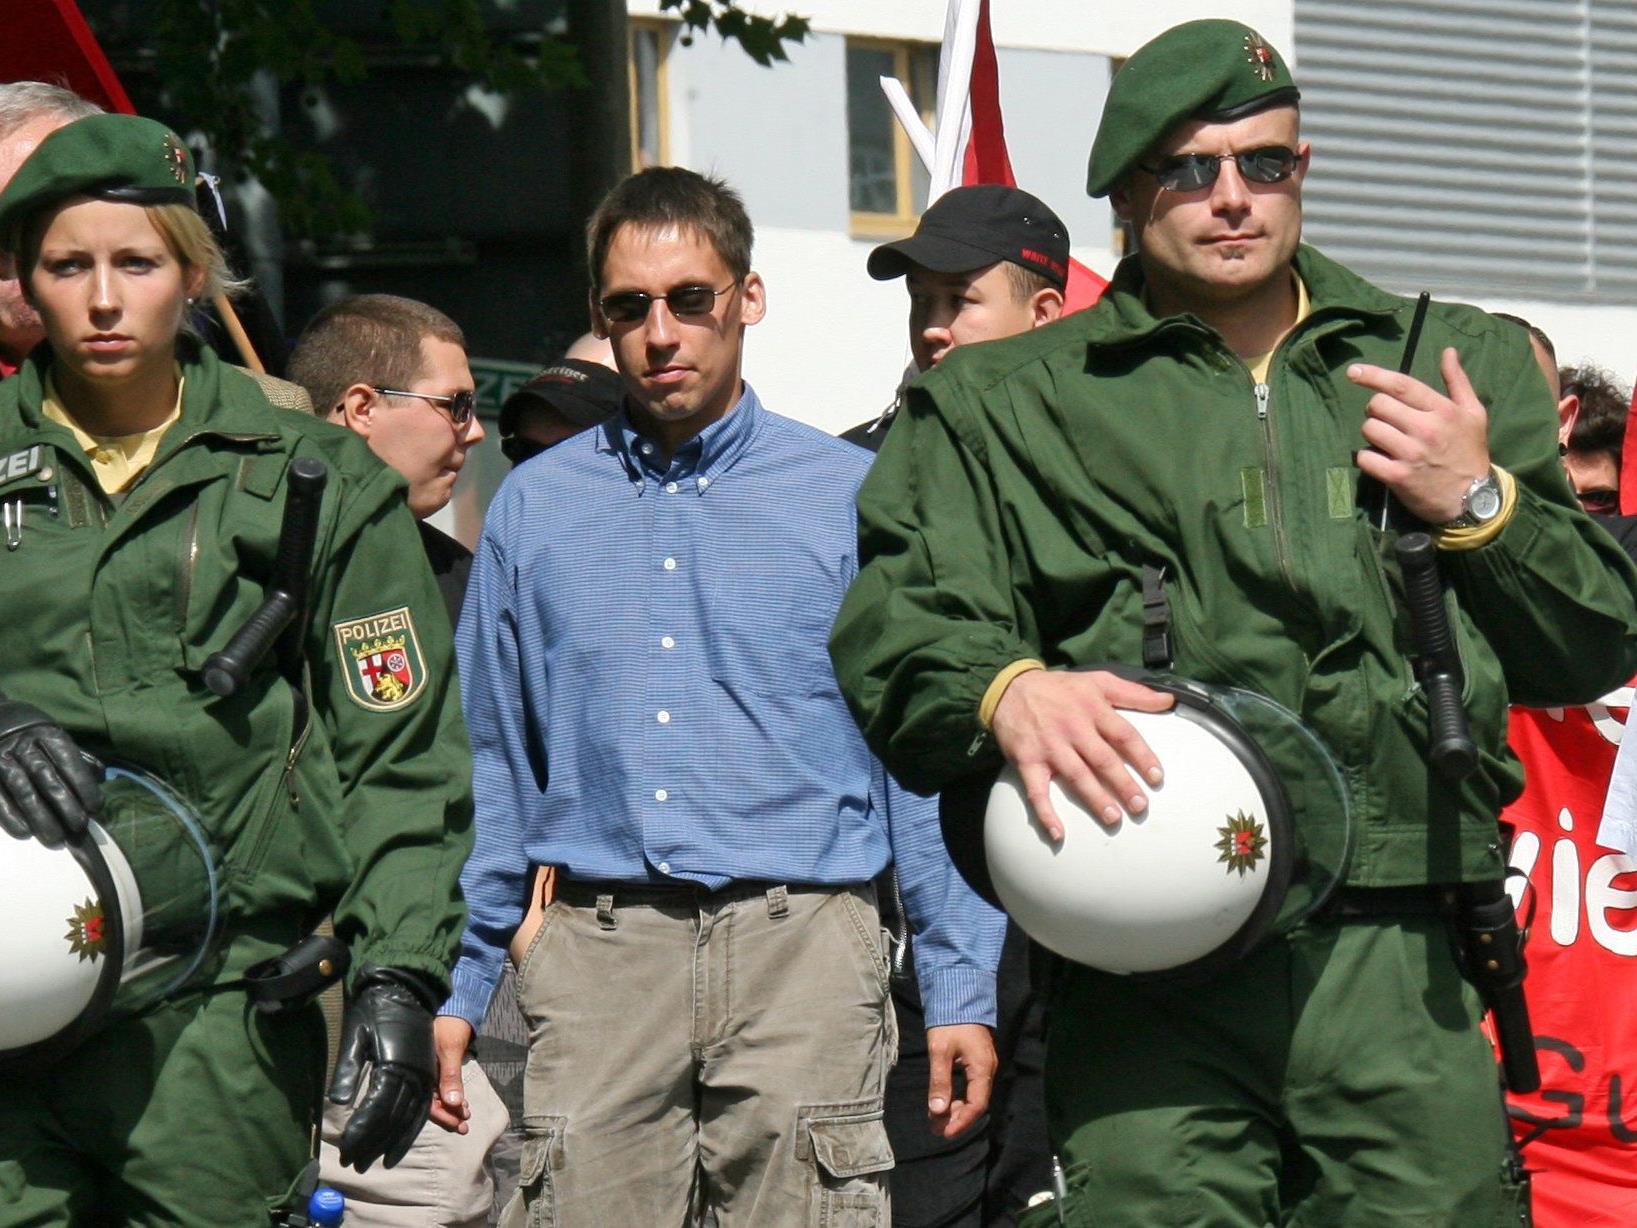 Der frühere NPD-Funktionär Ralf Wohlleben (M.) aufgenommen während einer NPD-Demonstration im Jahr 2007.